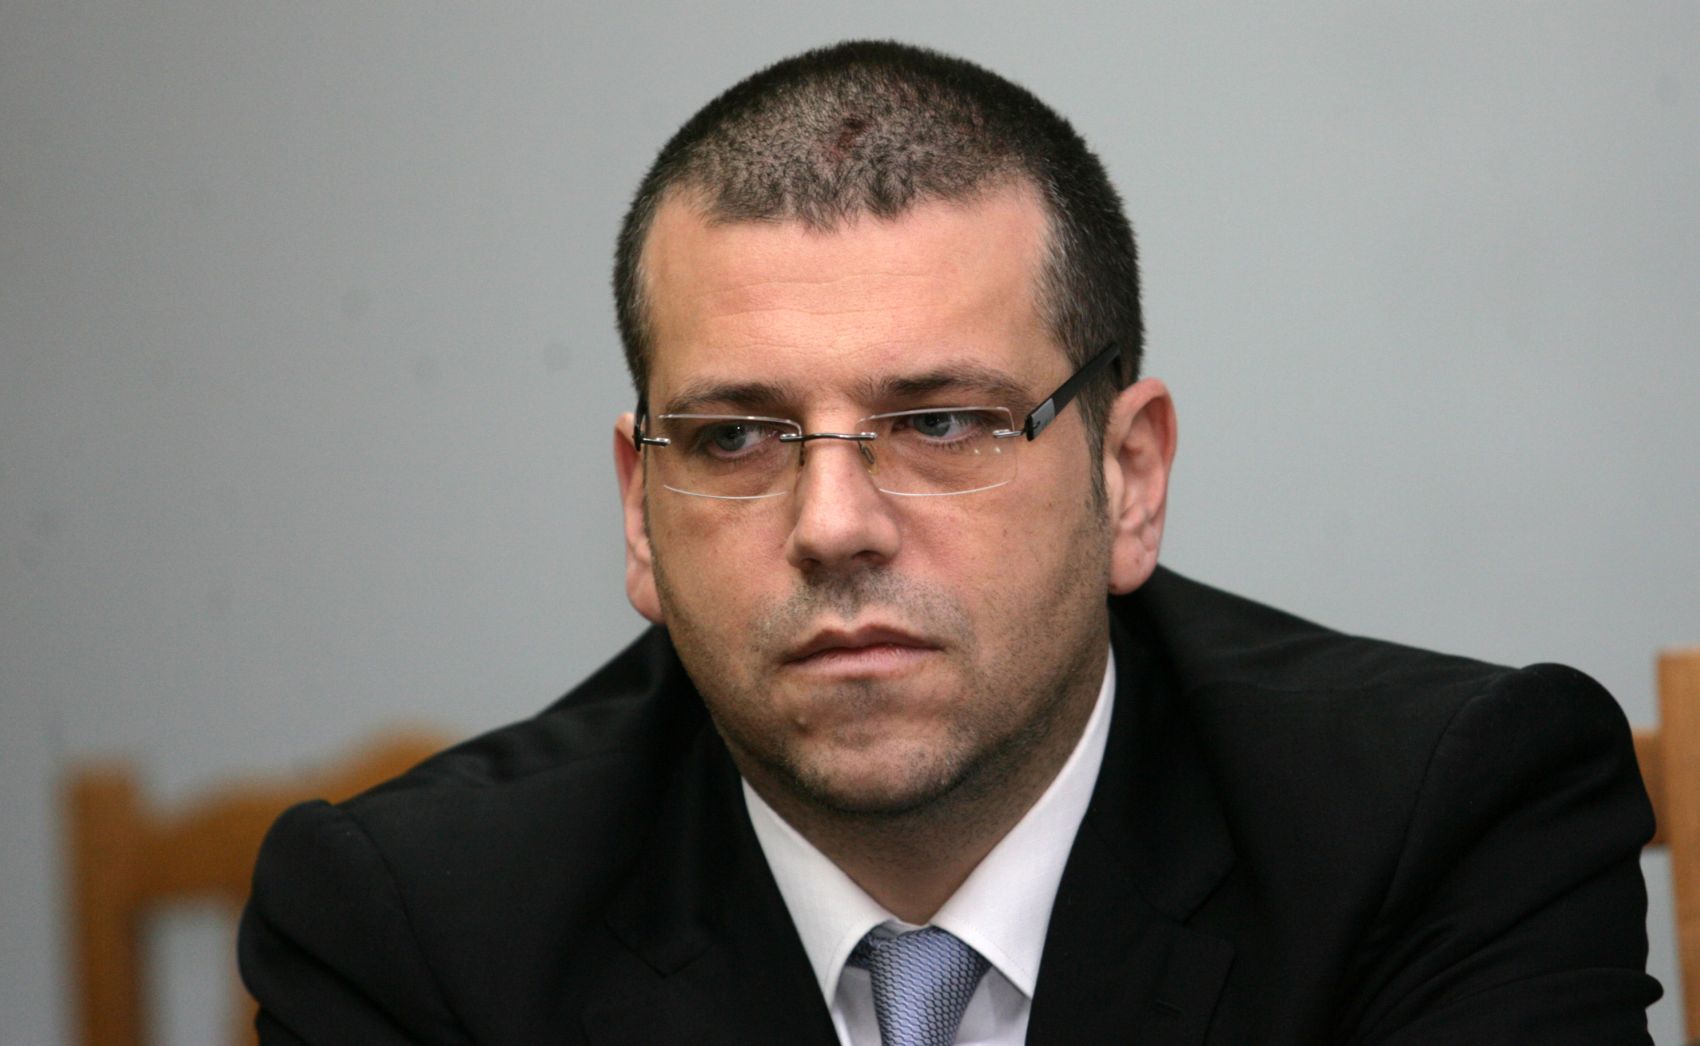 Никой в България не е проследяван и подслушван за това, че е журналист, категоричен бе Калин Георгиев